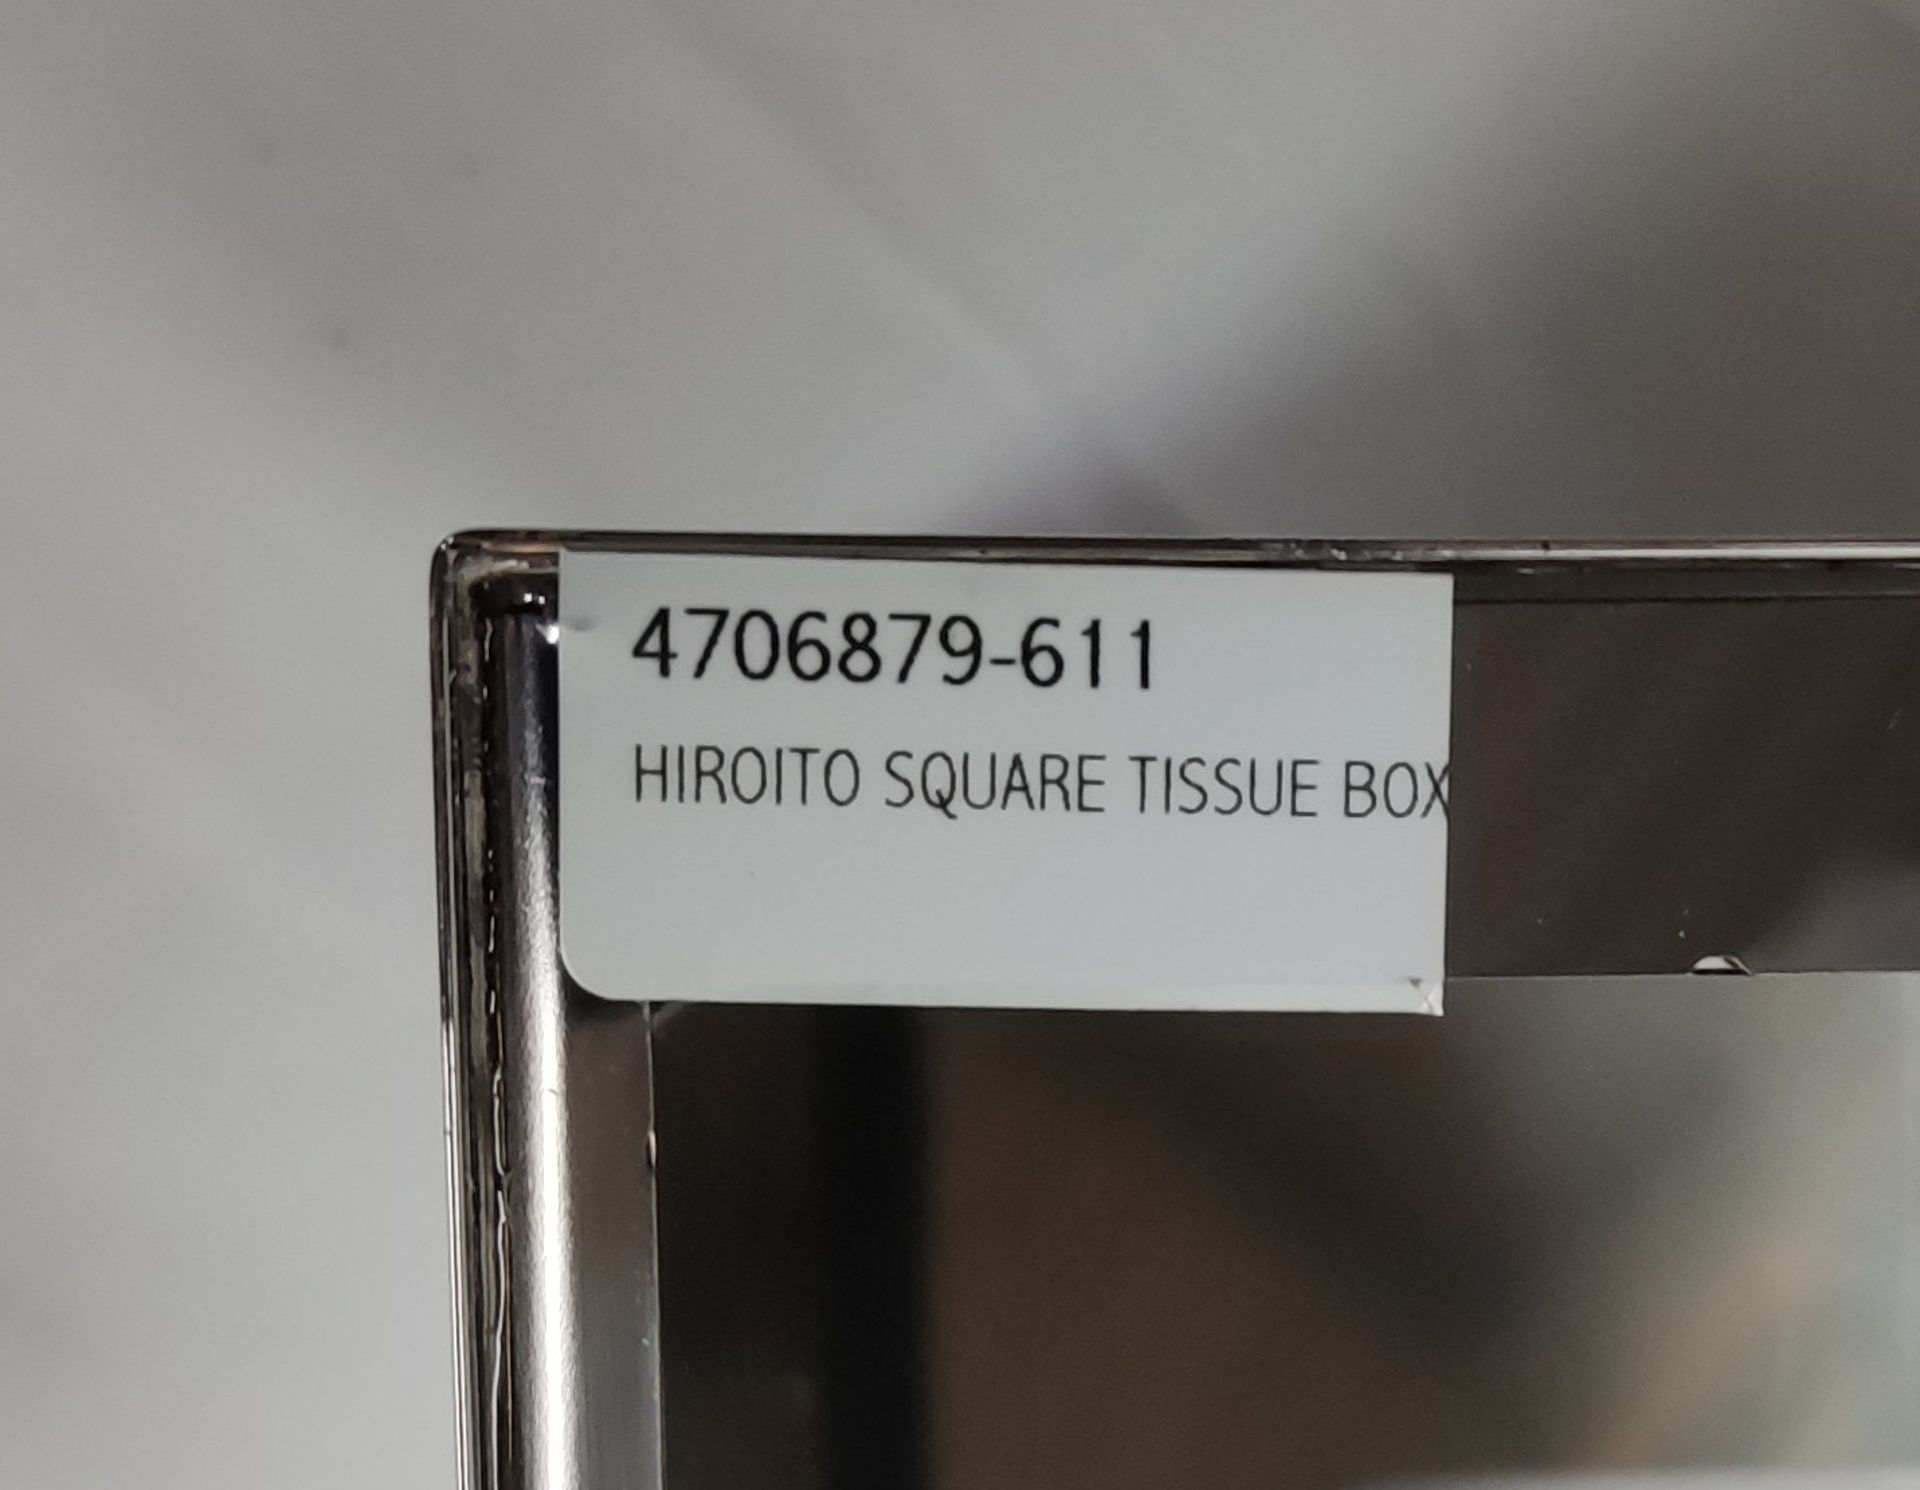 1 x VILLARI Hiroito Square Tissue Box - Chrome Plated - Boxed - Original RRP £529 - Ref: 6125321/ - Image 6 of 17